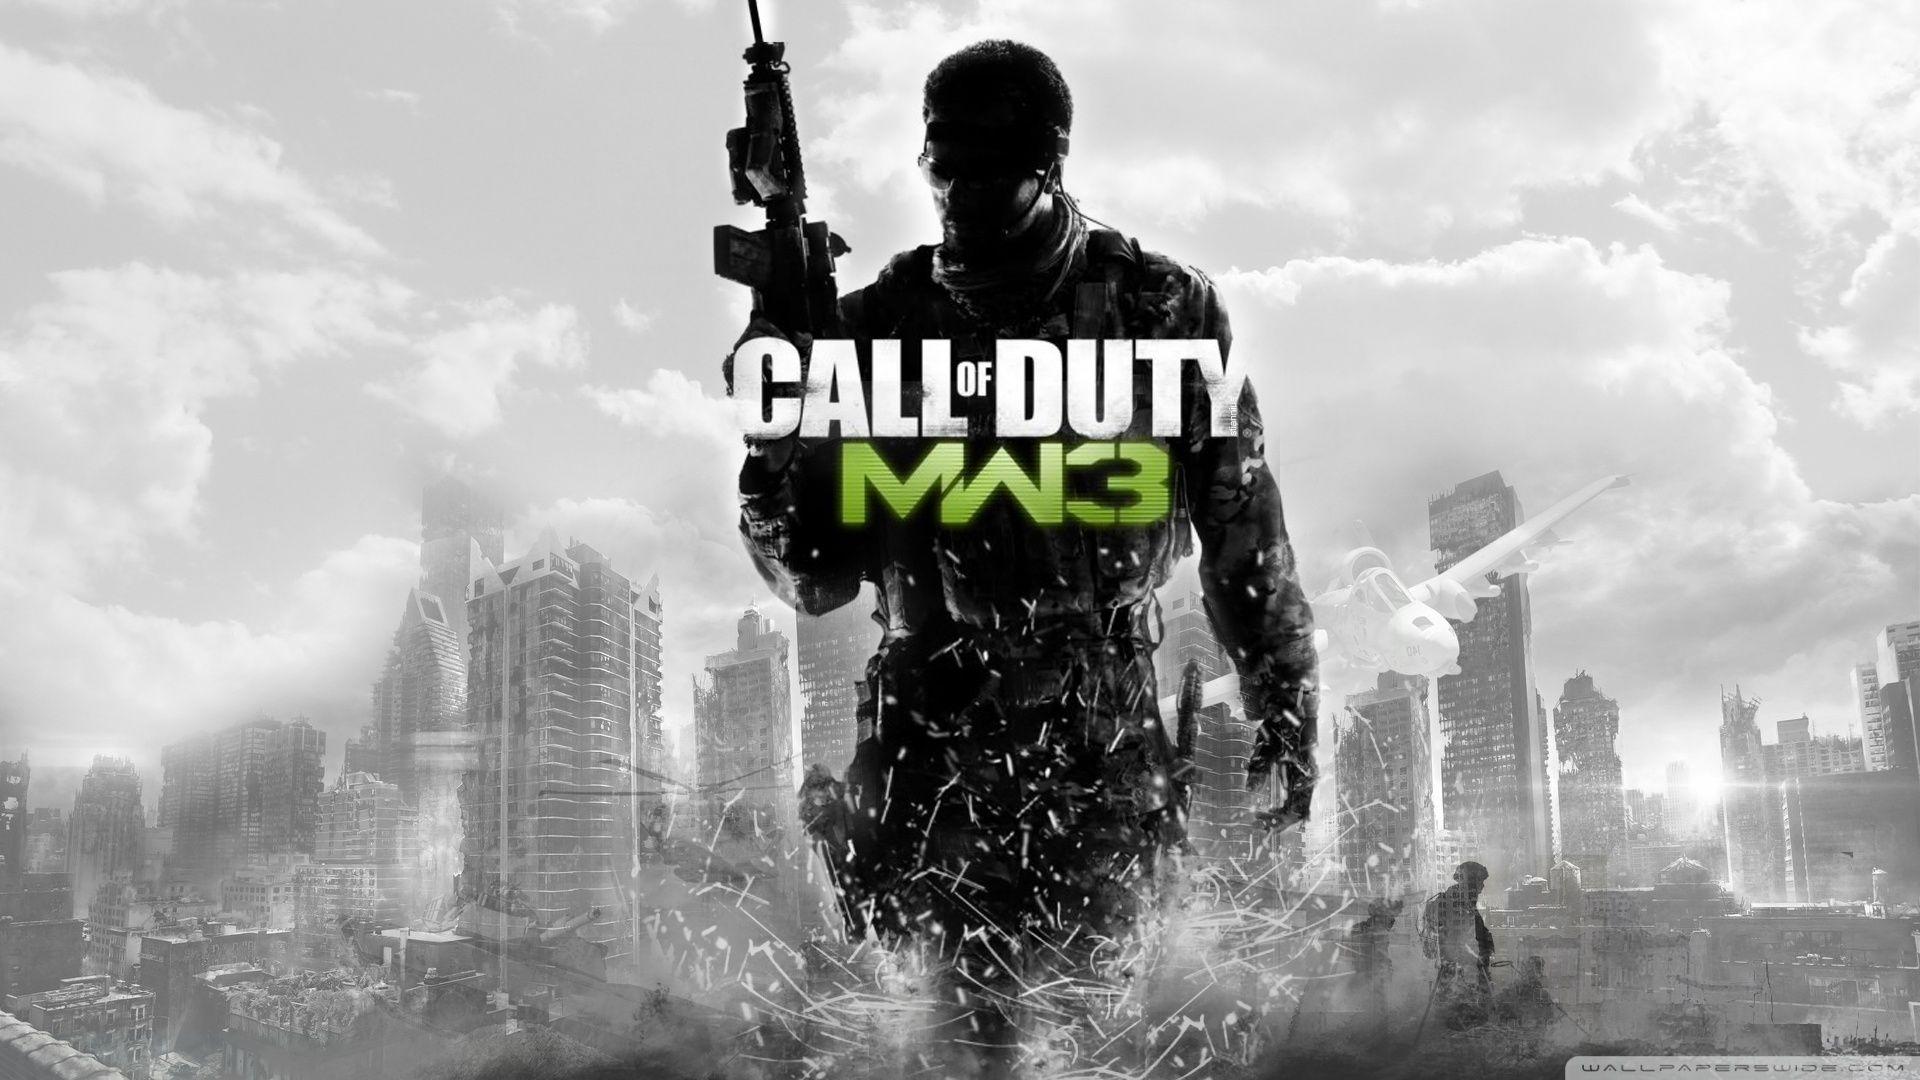 Call of Duty Modern Warfare 3 Ultra HD Desktop Background Wallpaper for 4K UHD TV, Widescreen & UltraWide Desktop & Laptop, Tablet